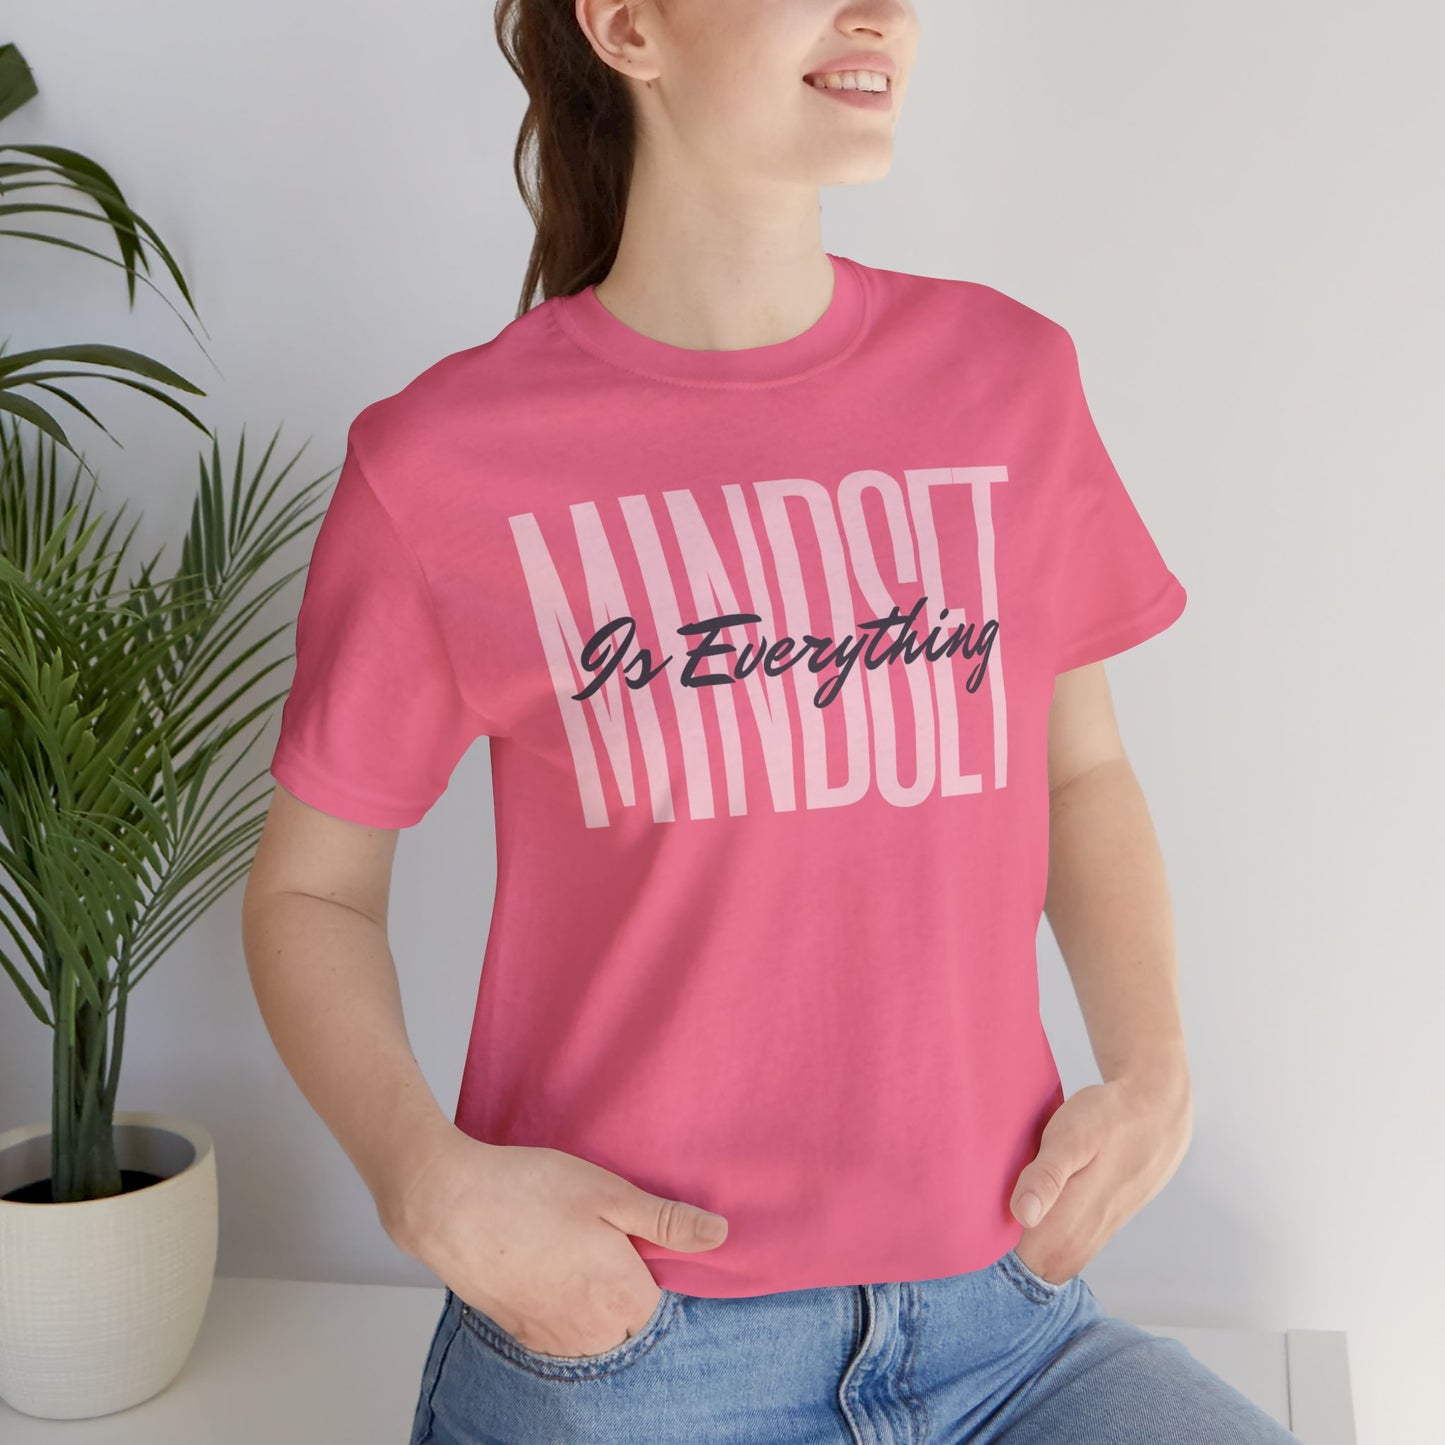 Mindset is Everything Motivational Unisex T-Shirt - Motivational Treats